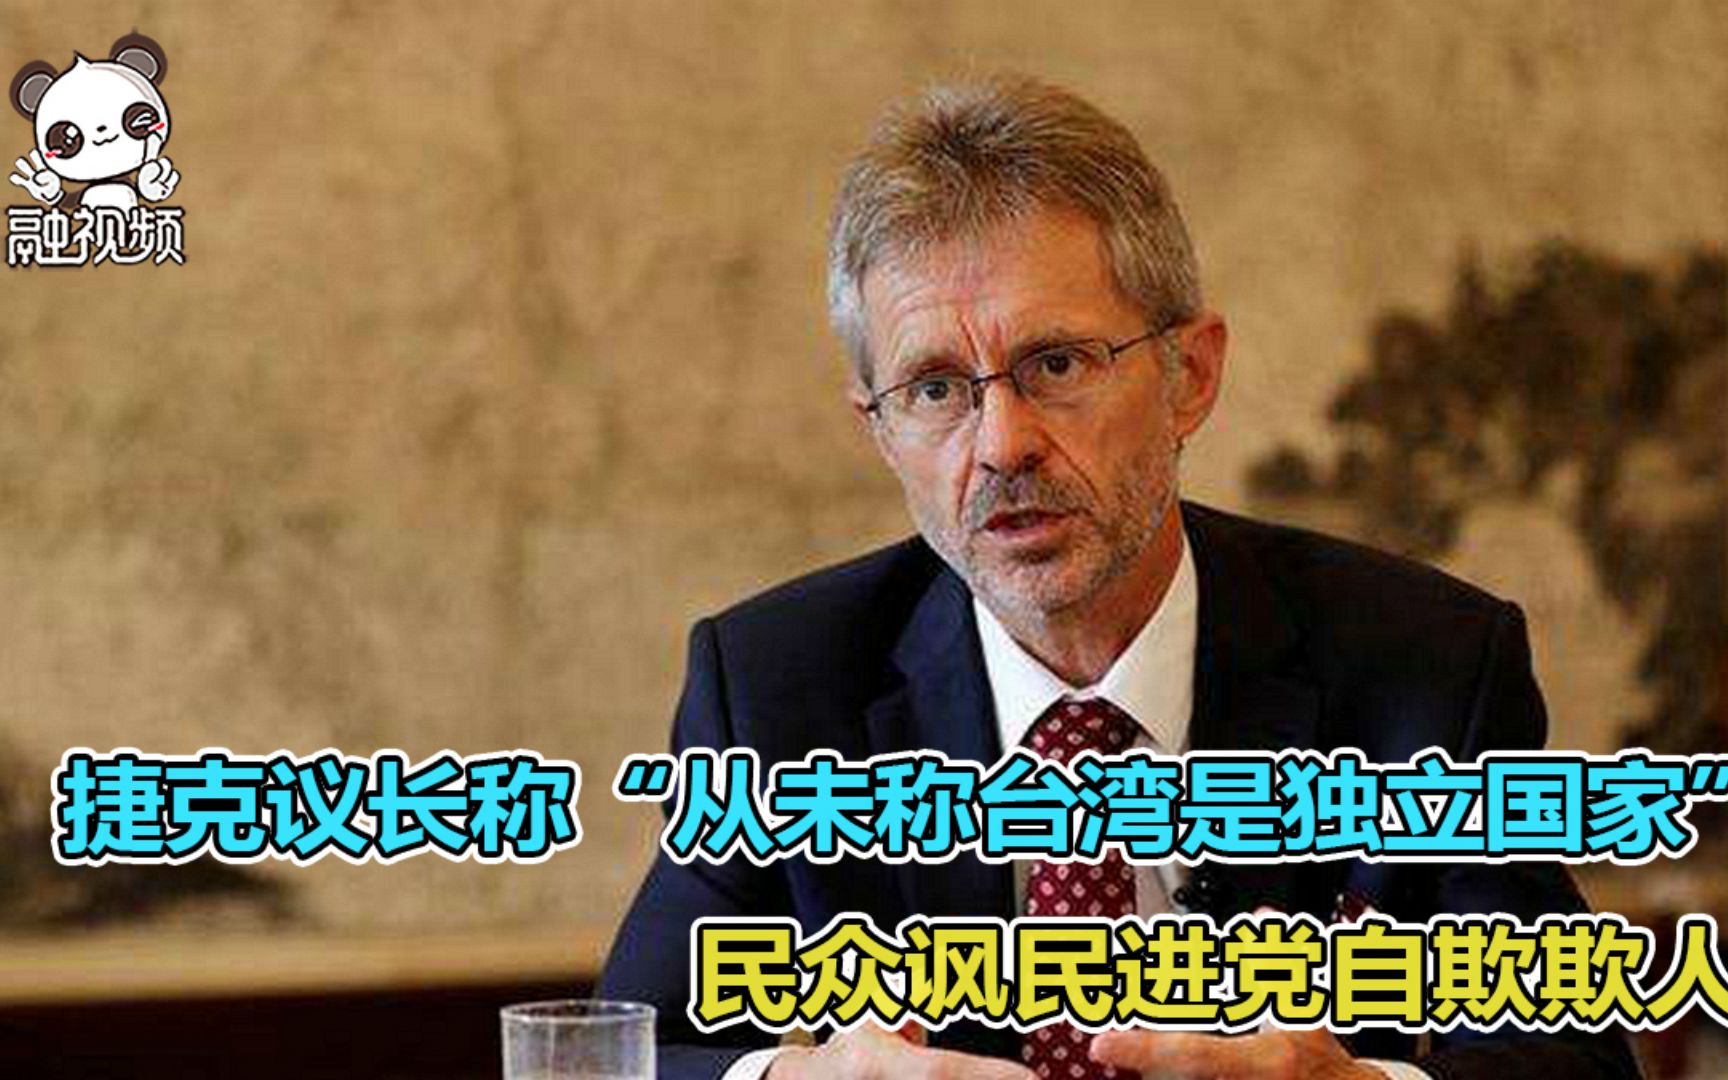 该怎么说：捷克议长称“从未称台湾是独立国家” 民众讽民进党自欺欺人[第1次]的第1张示图